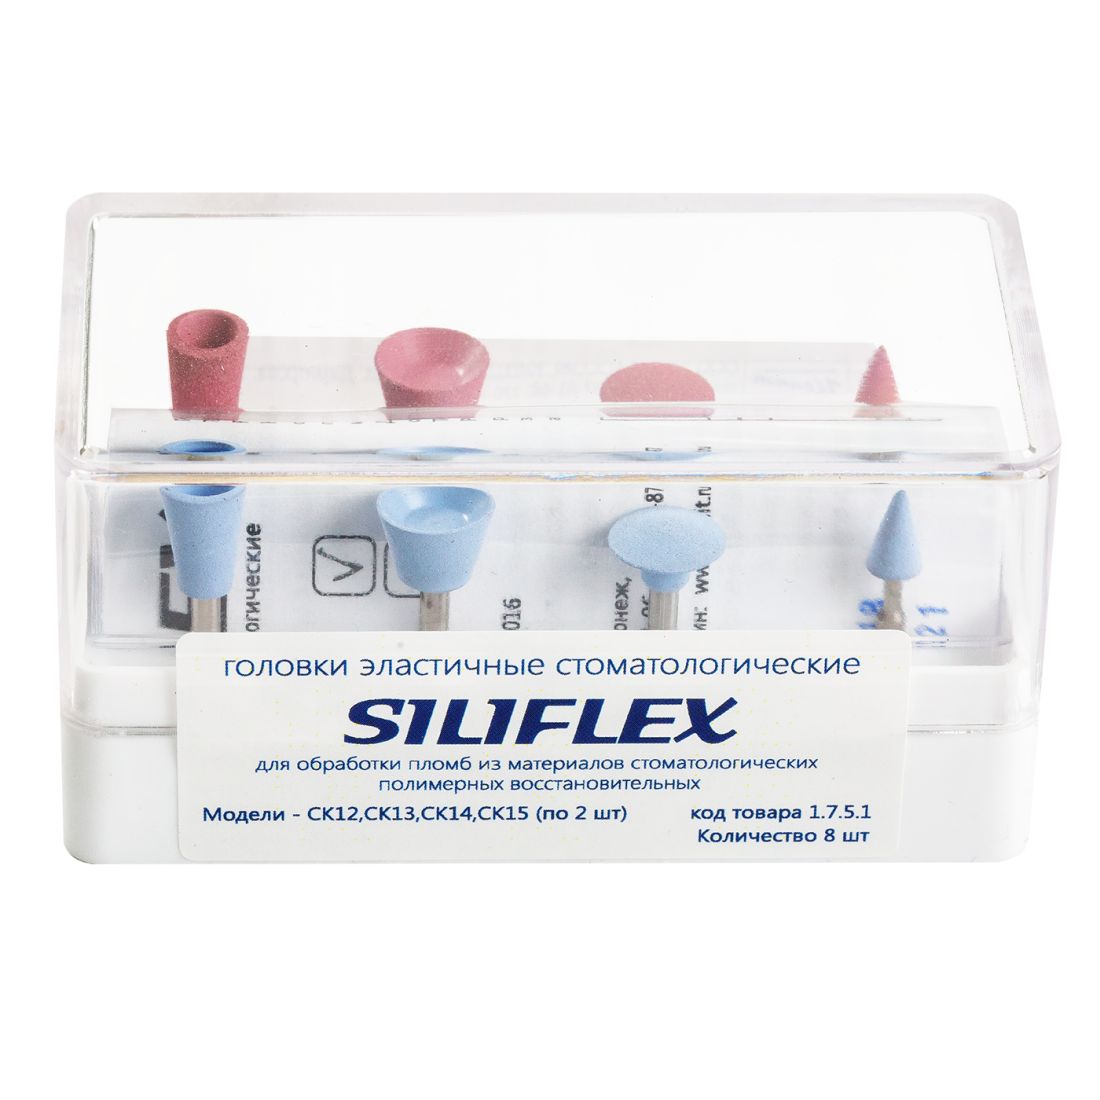 Siliflex - головки сликоновые Силифлекс для обработки пломб набор (8шт)